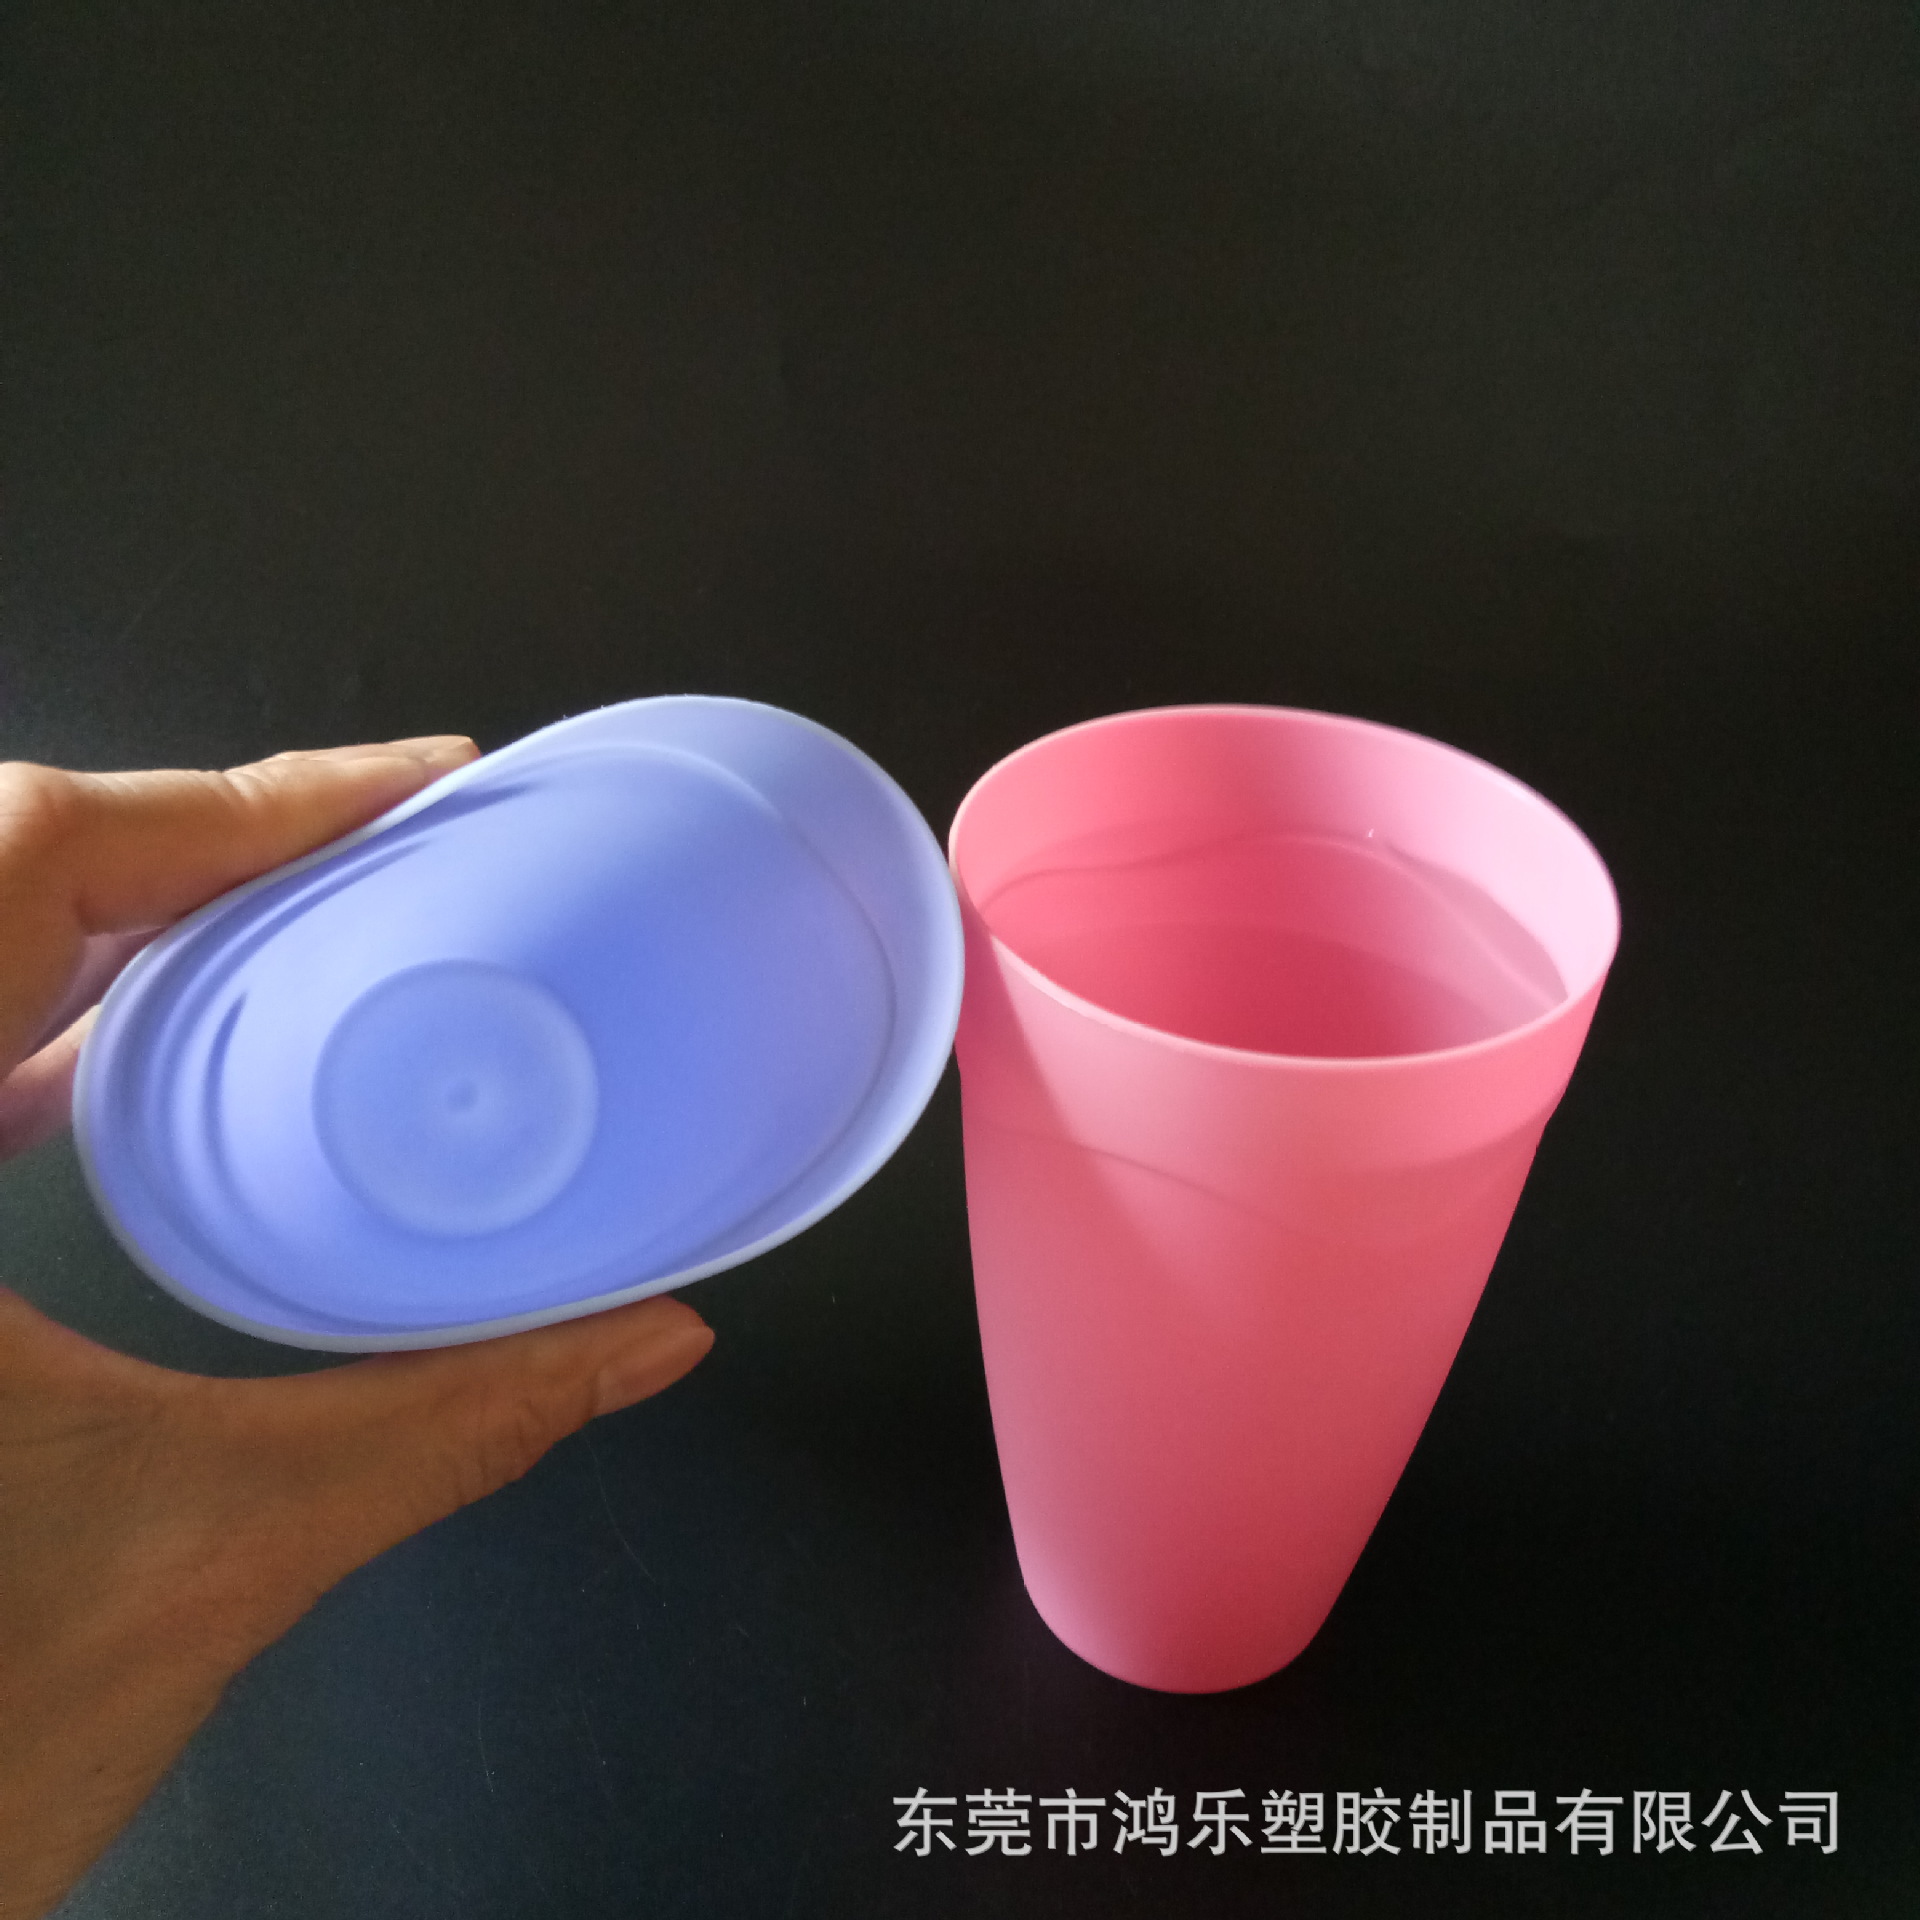 厂家定制PP彩色塑料杯450ml塑料果汁饮料杯细磨砂杯可印刷图案示例图3